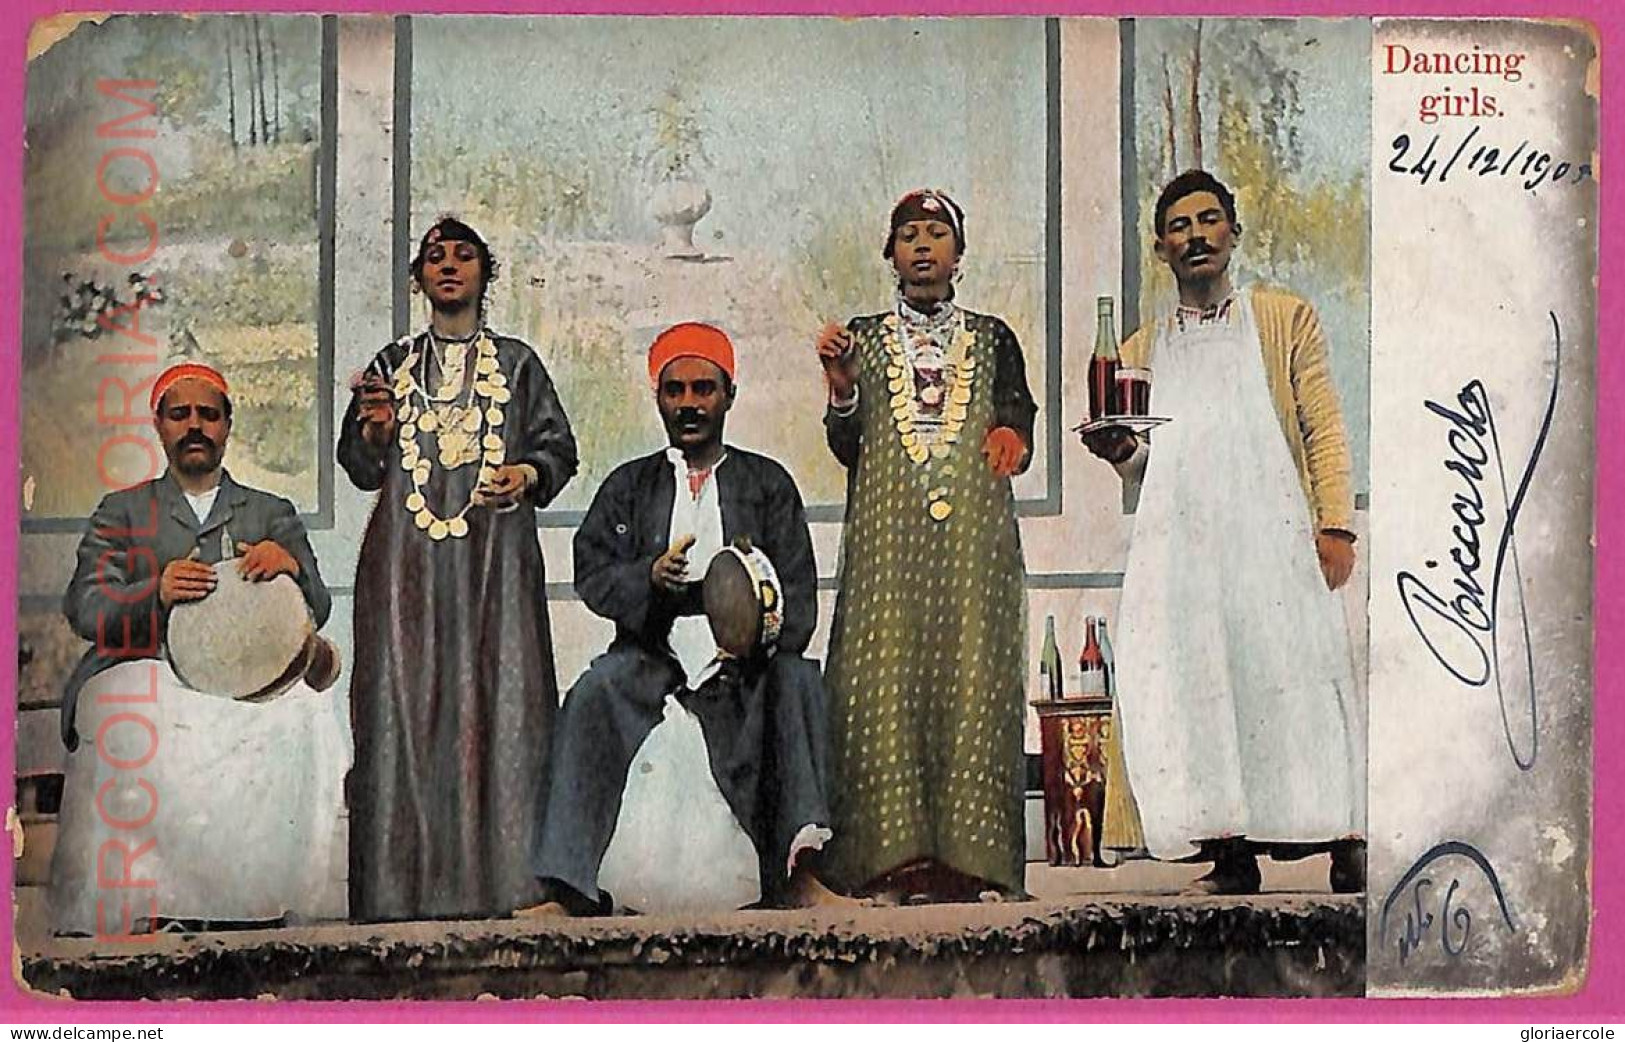 Ag2807 - EGYPT - VINTAGE POSTCARD - Ethnic, Dancing Girls - 1905 - Africa